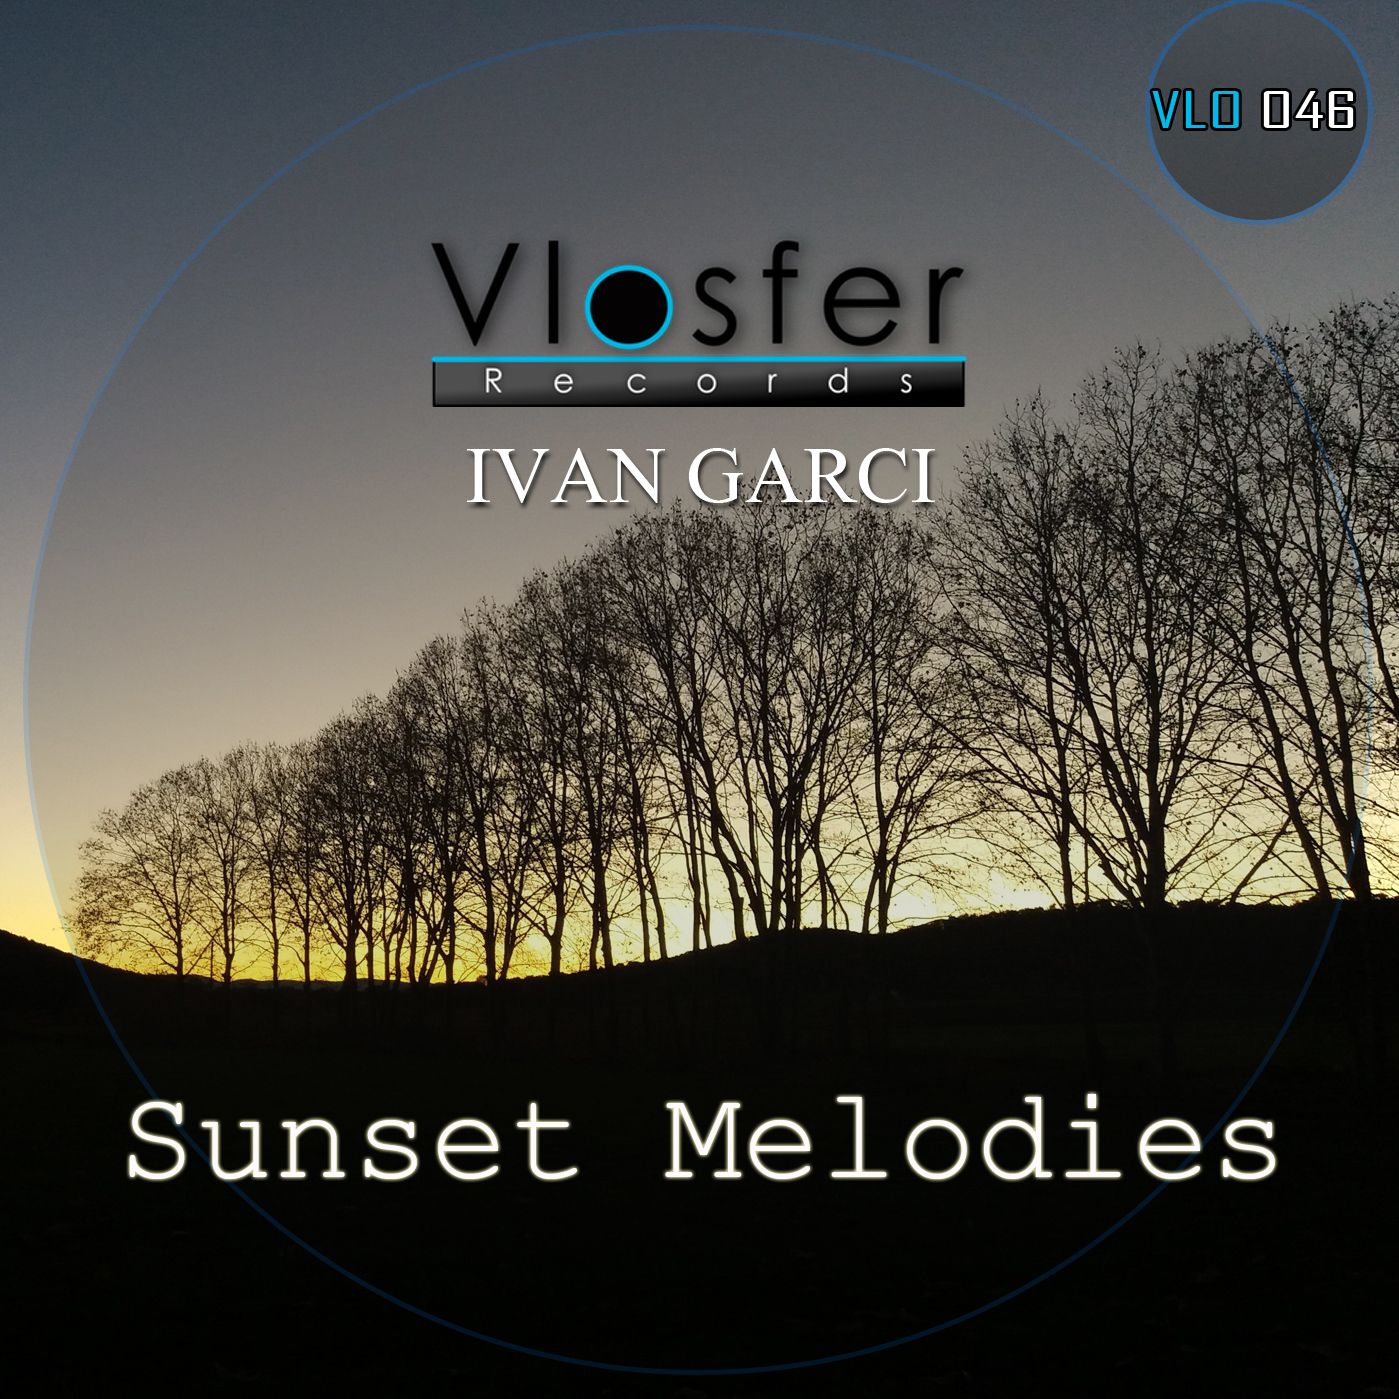 تحميل Clear - Ivan Garci (low quality sound) Vlosfer records.